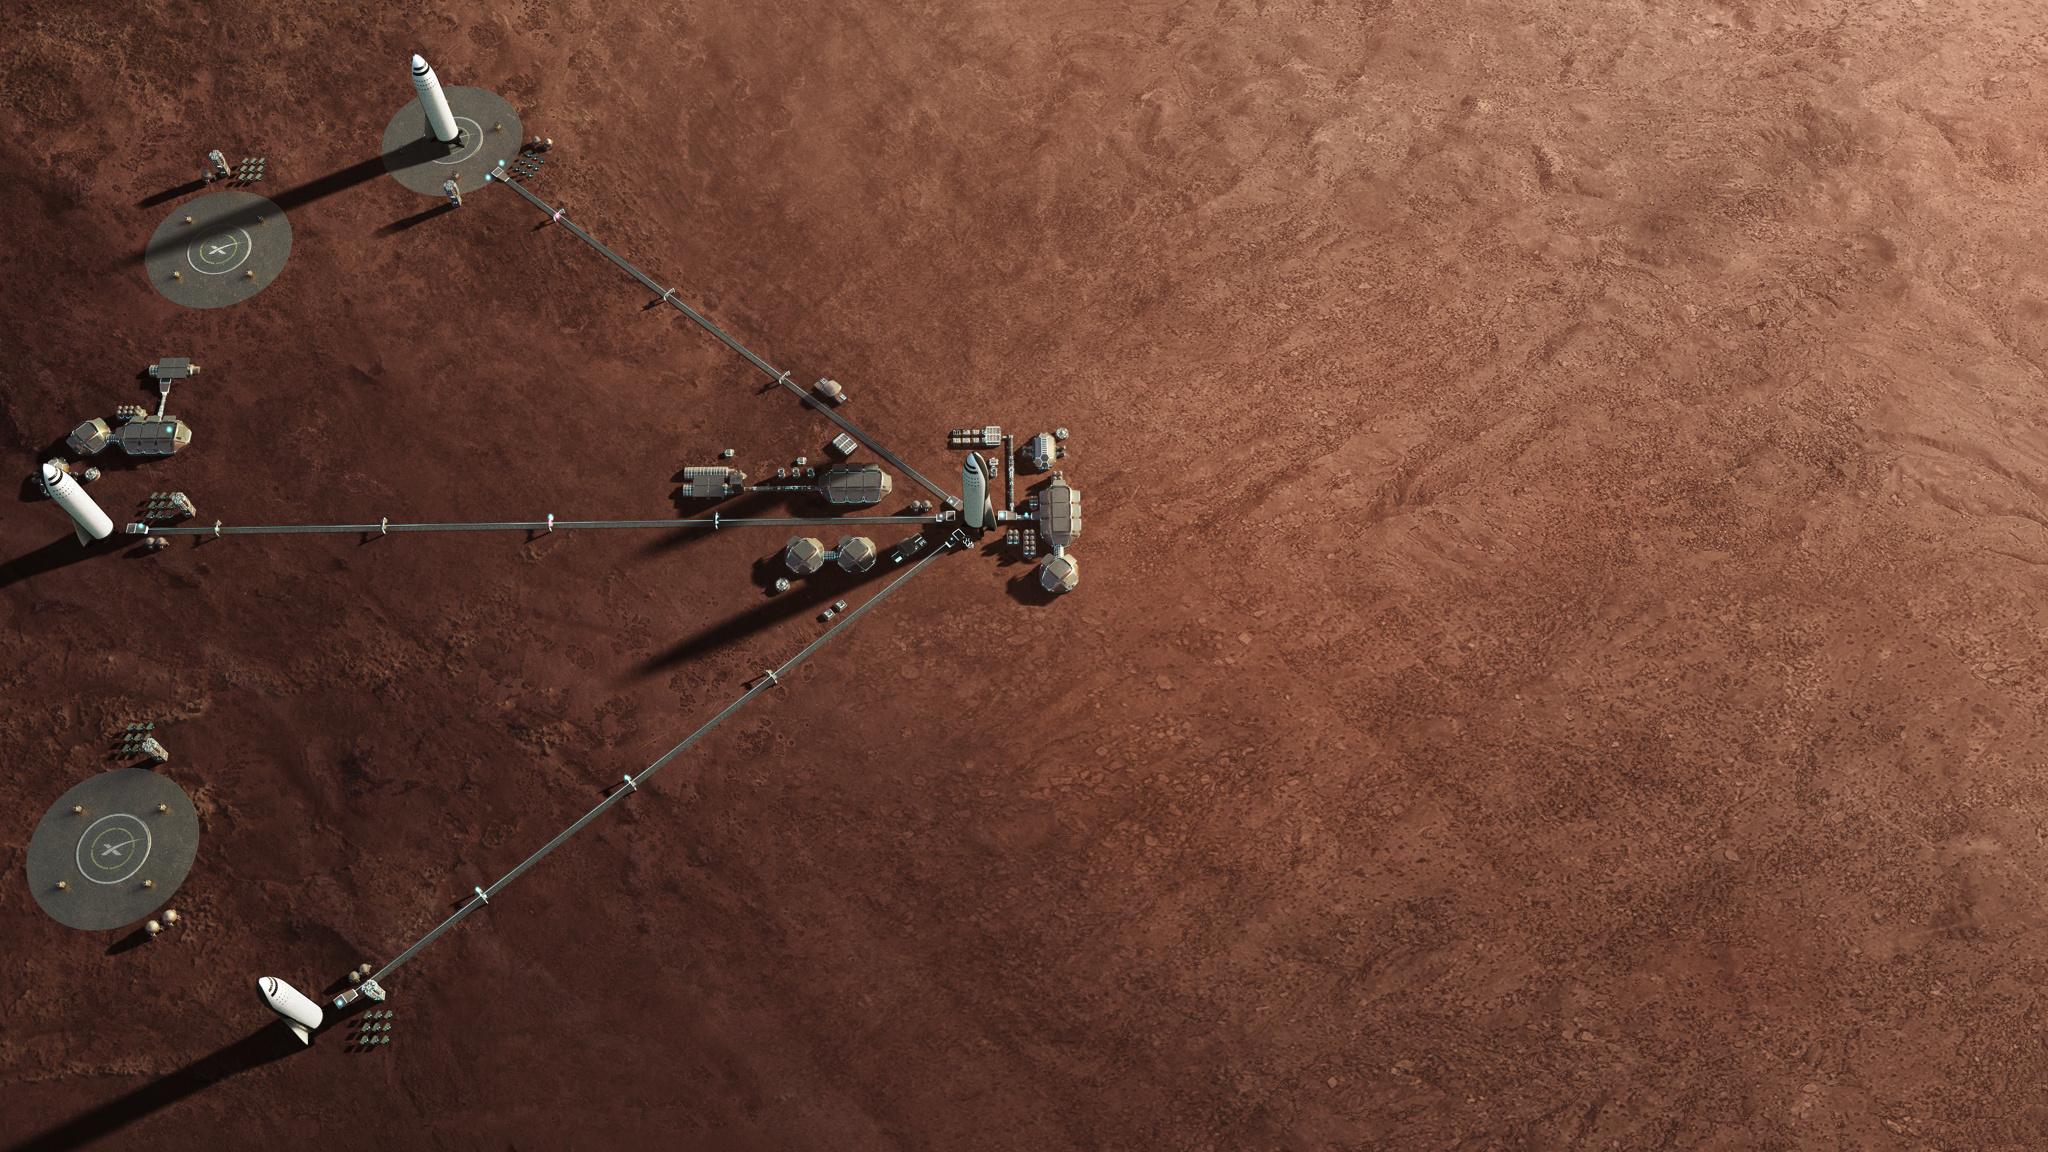 SpaceX' Starships at Mars Basecamp